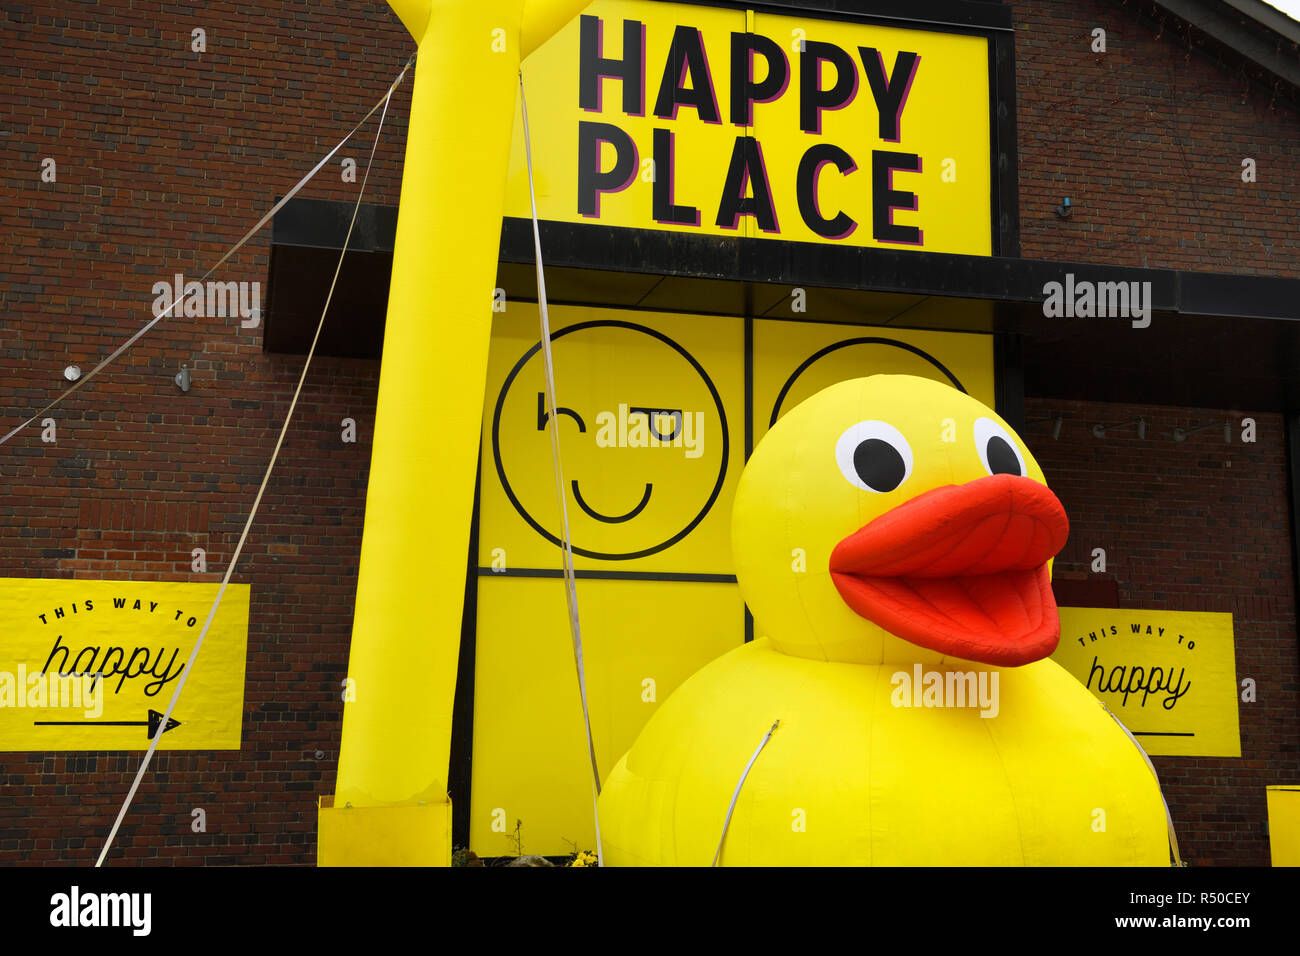 Inflables gigantes patito amarillo en lugar feliz pop-up instalación de arte interactivo en Toronto Harbourfront Centre Foto de stock